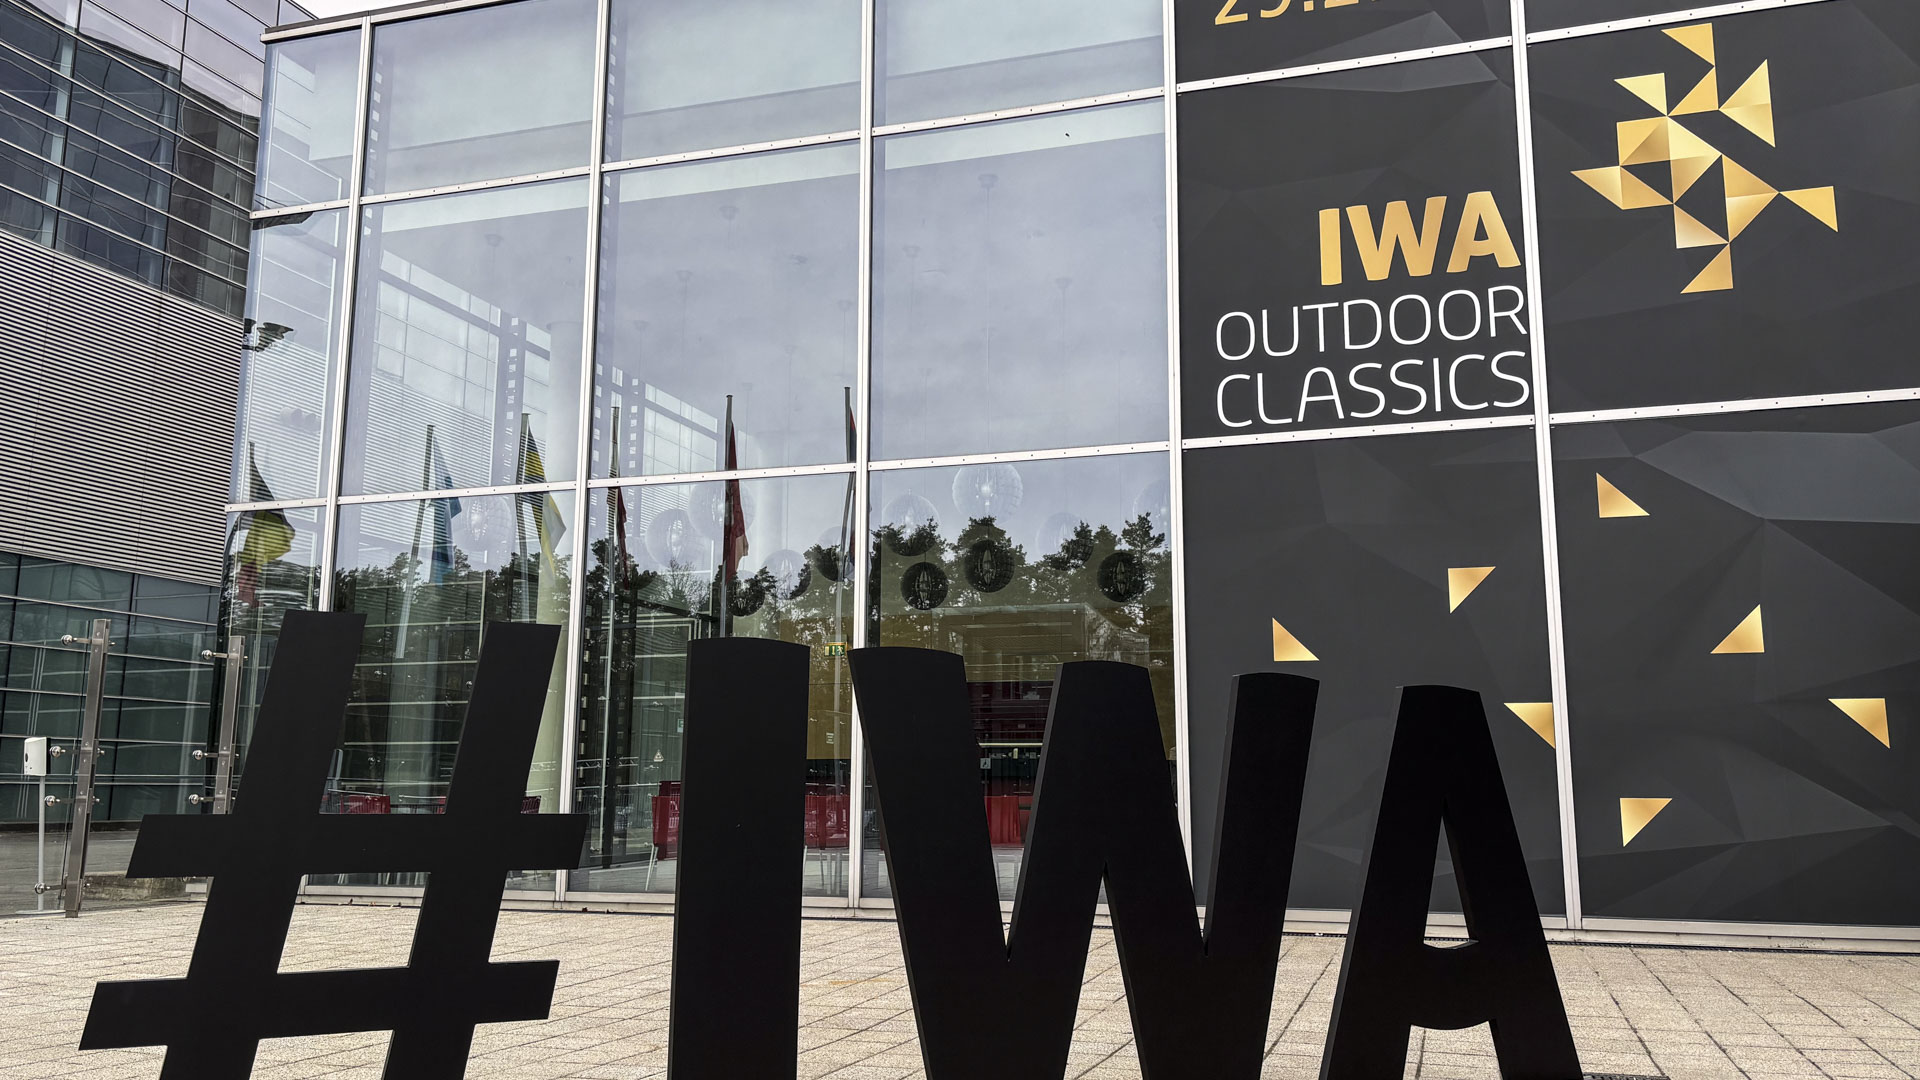 IWA  la fiera dell'outdoor che fornisce la pi importante vetrina europea ai produttori di armi, ottiche, munizioni e accessori